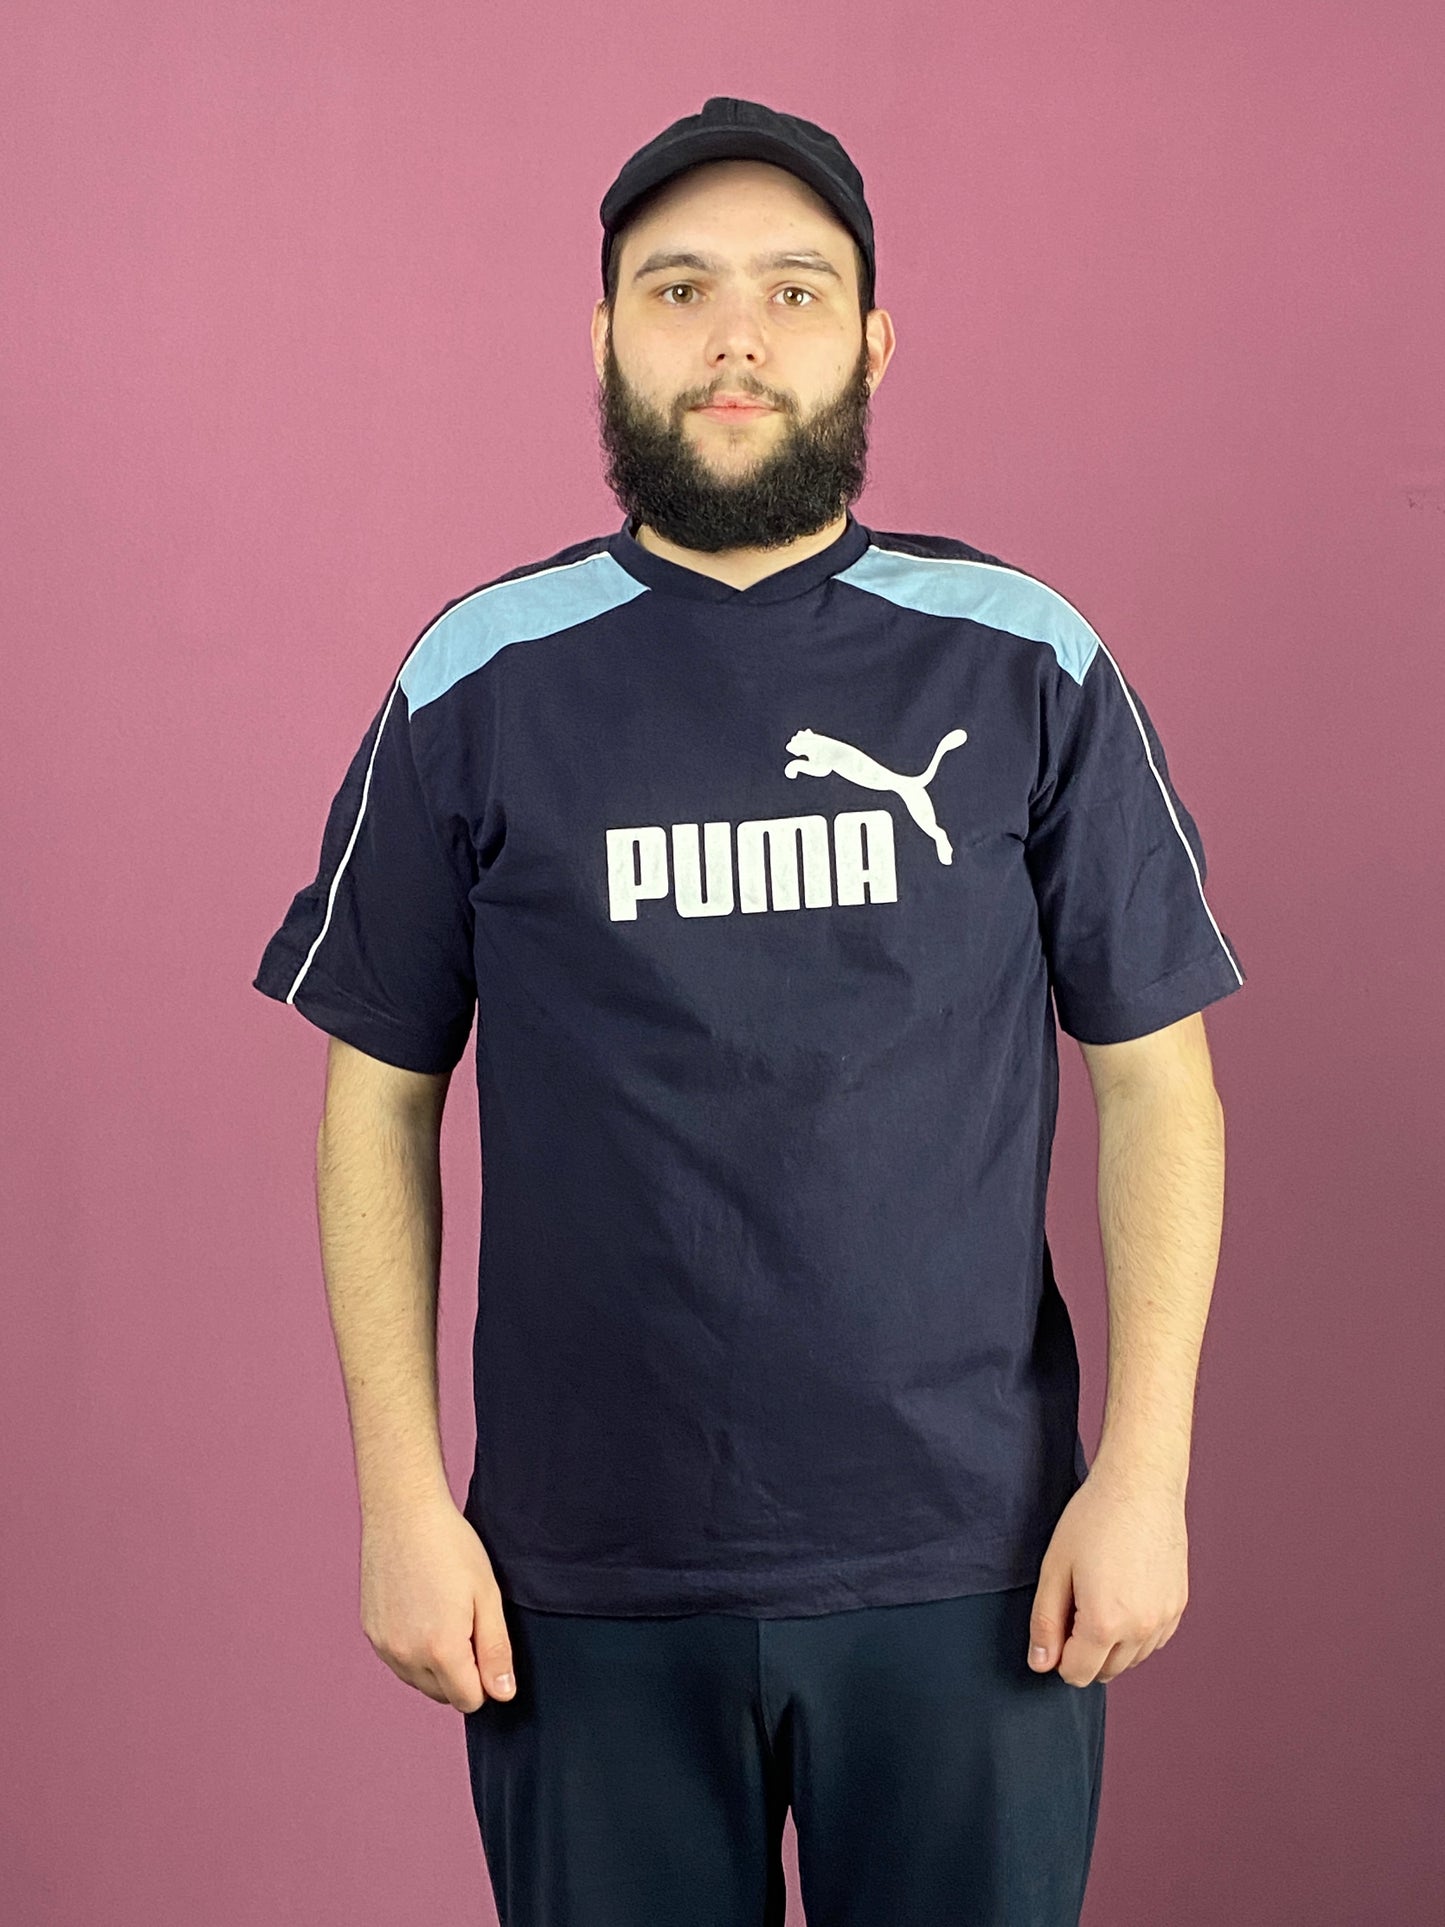 90s Puma Vintage Men's T-Shirt - Large Navy Blue Cotton